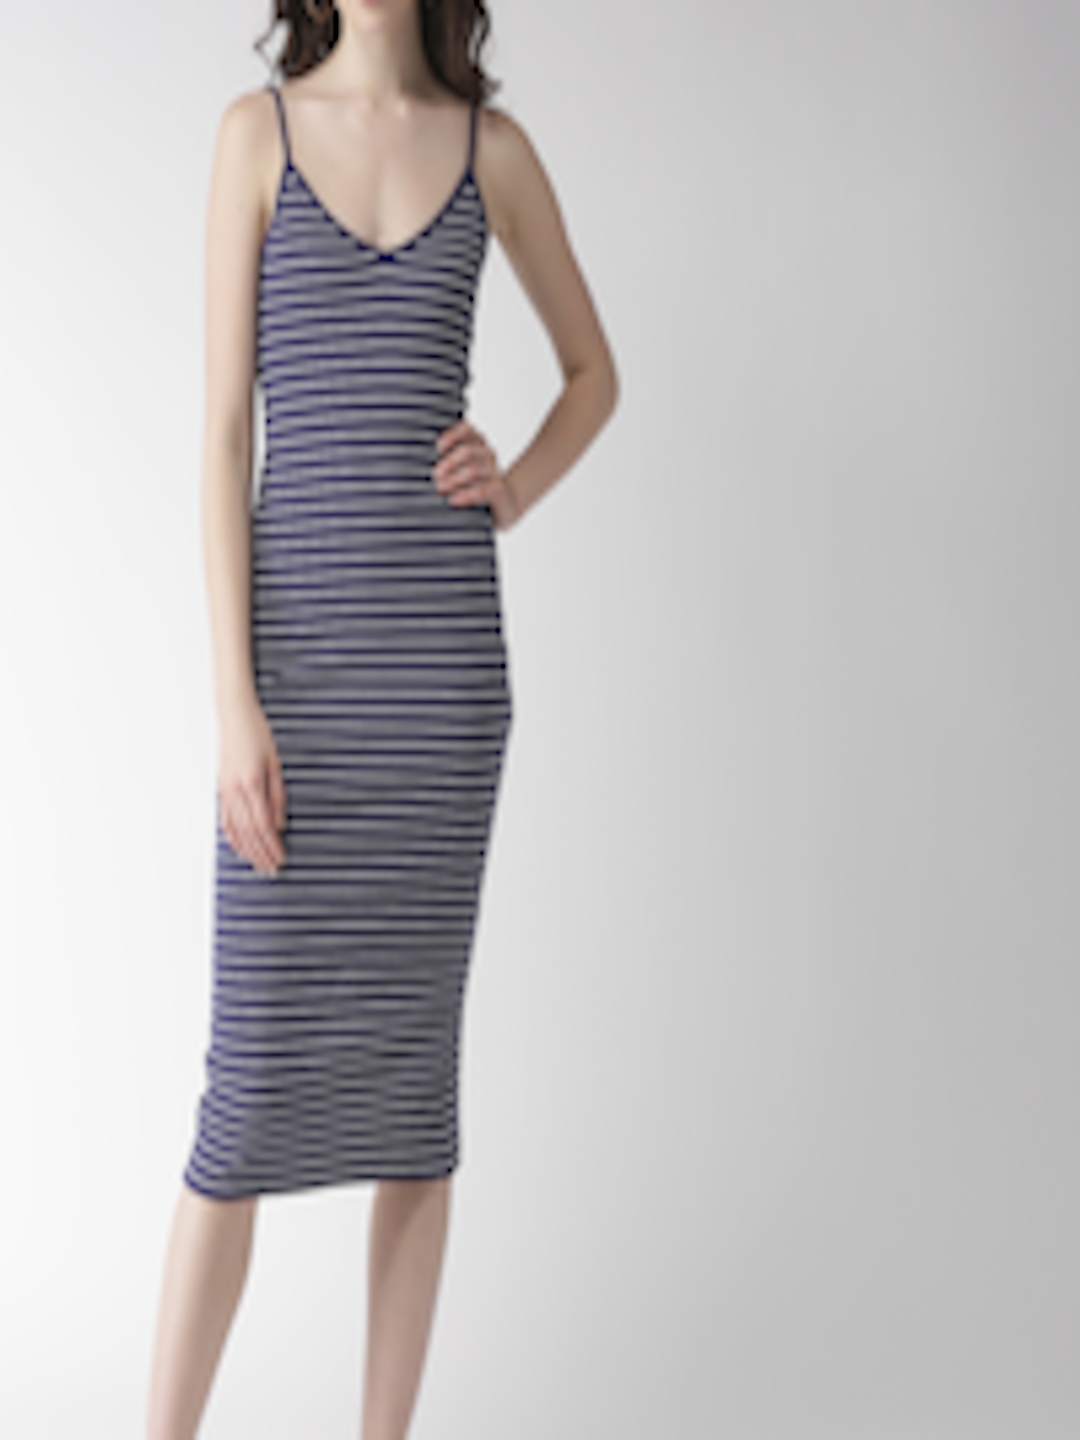 Buy FOREVER 21 Women Navy Blue & White Striped Bodycon Dress - Dresses